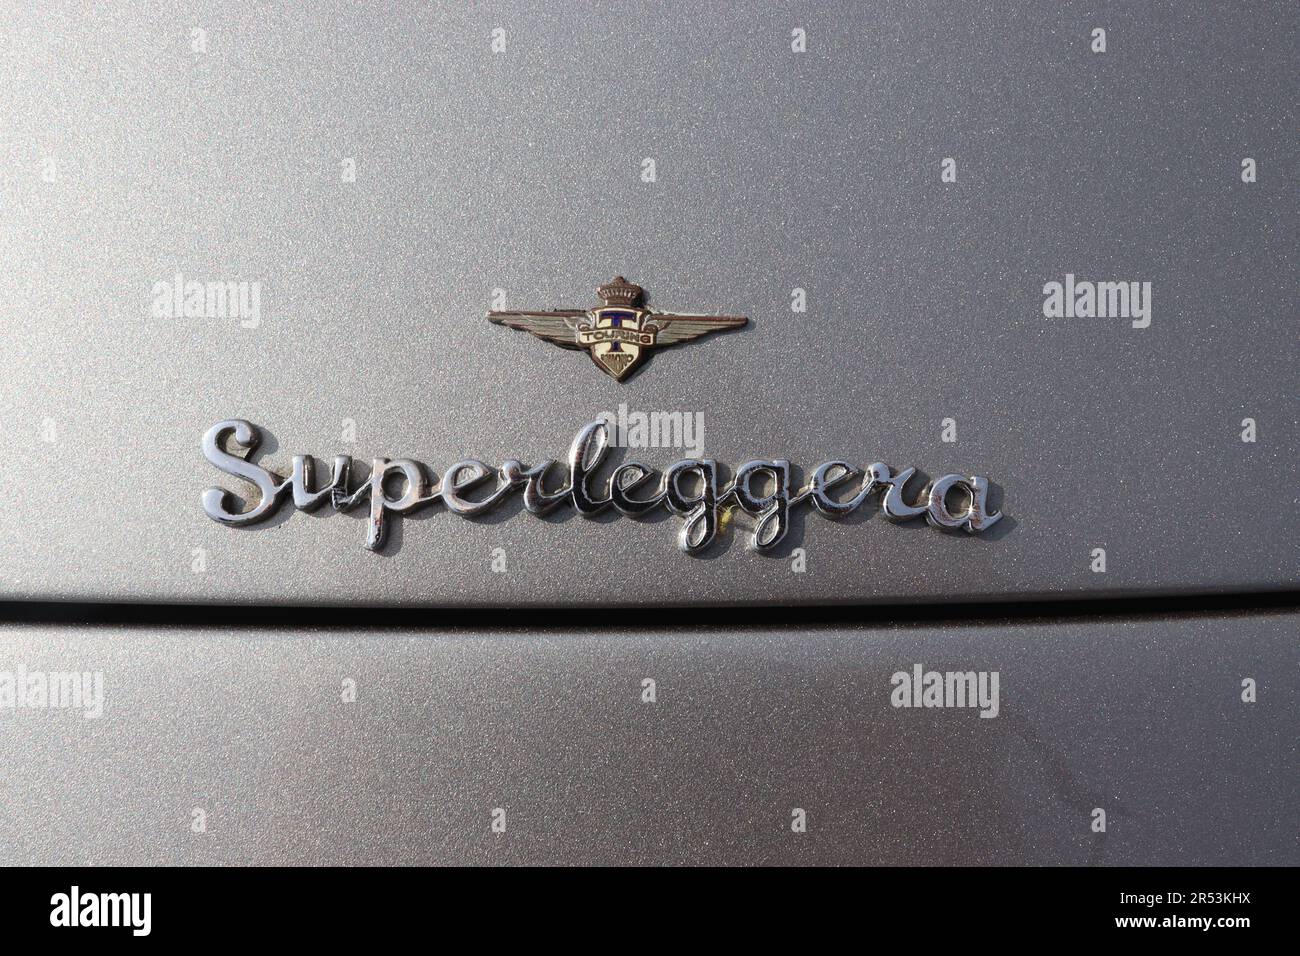 Emblème Superleggera sur un Maserati 3500 GTI Touring Iniezione, avec carrosserie par Carrozzeria Touring, qui a conçu le système superleggera. Banque D'Images